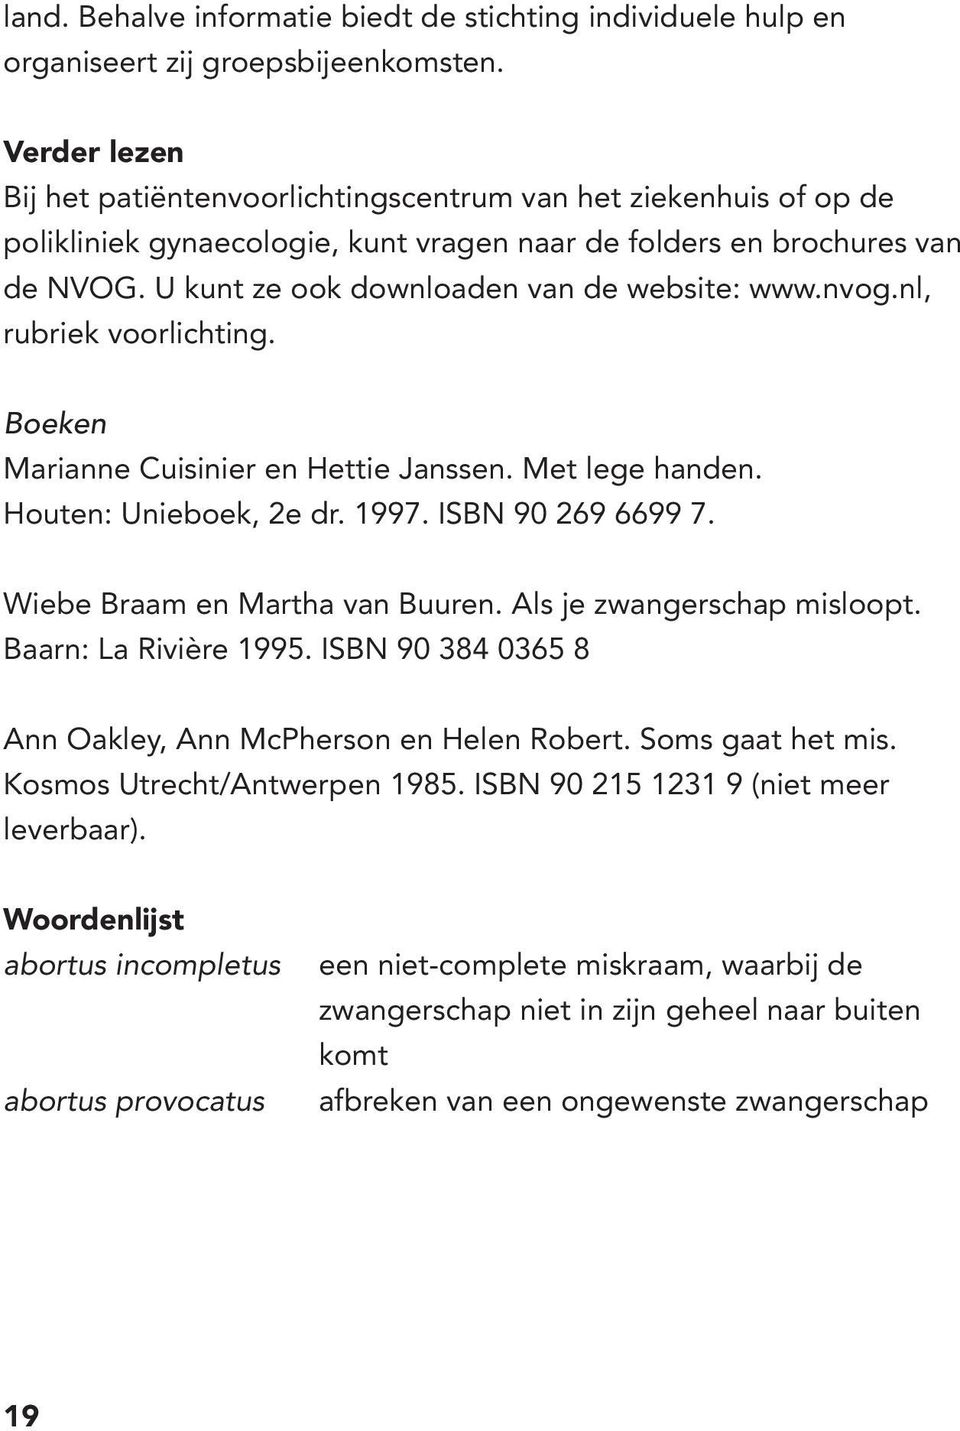 U kunt ze ook downloaden van de website: www.nvog.nl, rubriek voorlichting. Boeken Marianne Cuisinier en Hettie Janssen. Met lege handen. Houten: Unieboek, 2e dr. 1997. ISBN 90 269 6699 7.